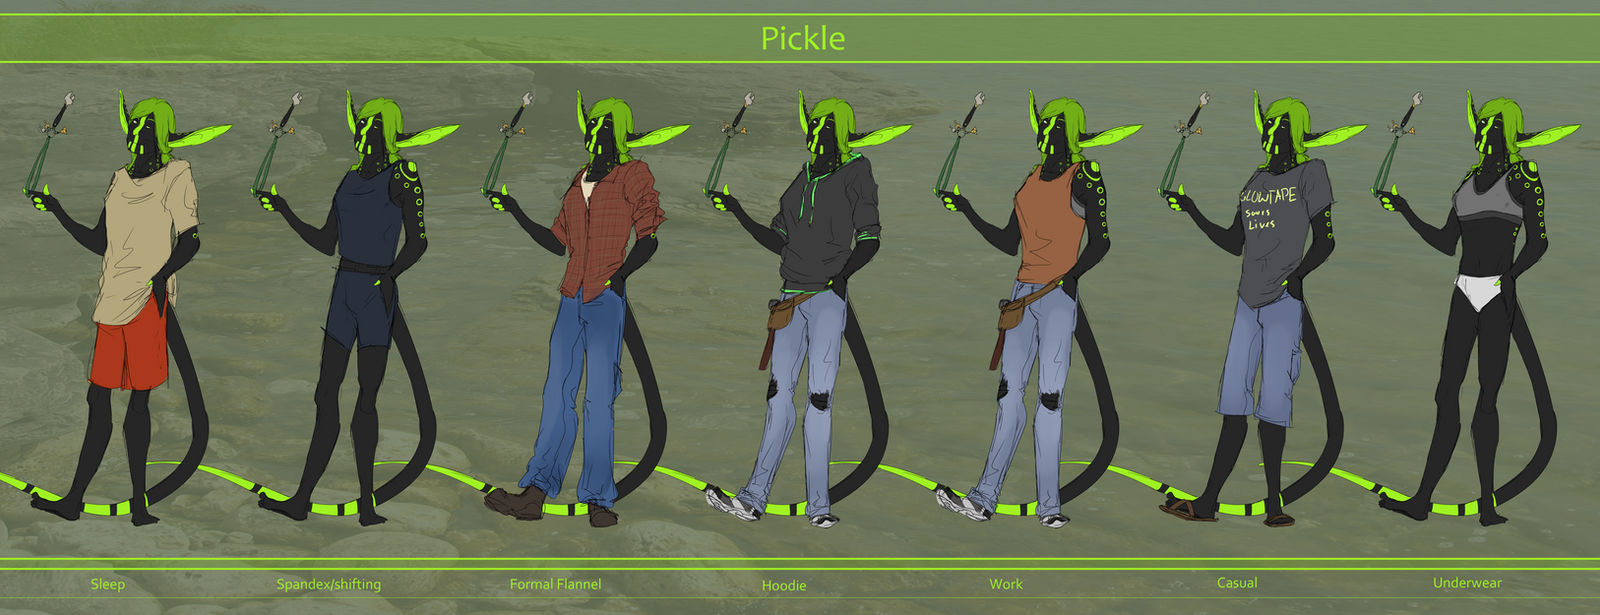 Pickle's Wardrobe sorta